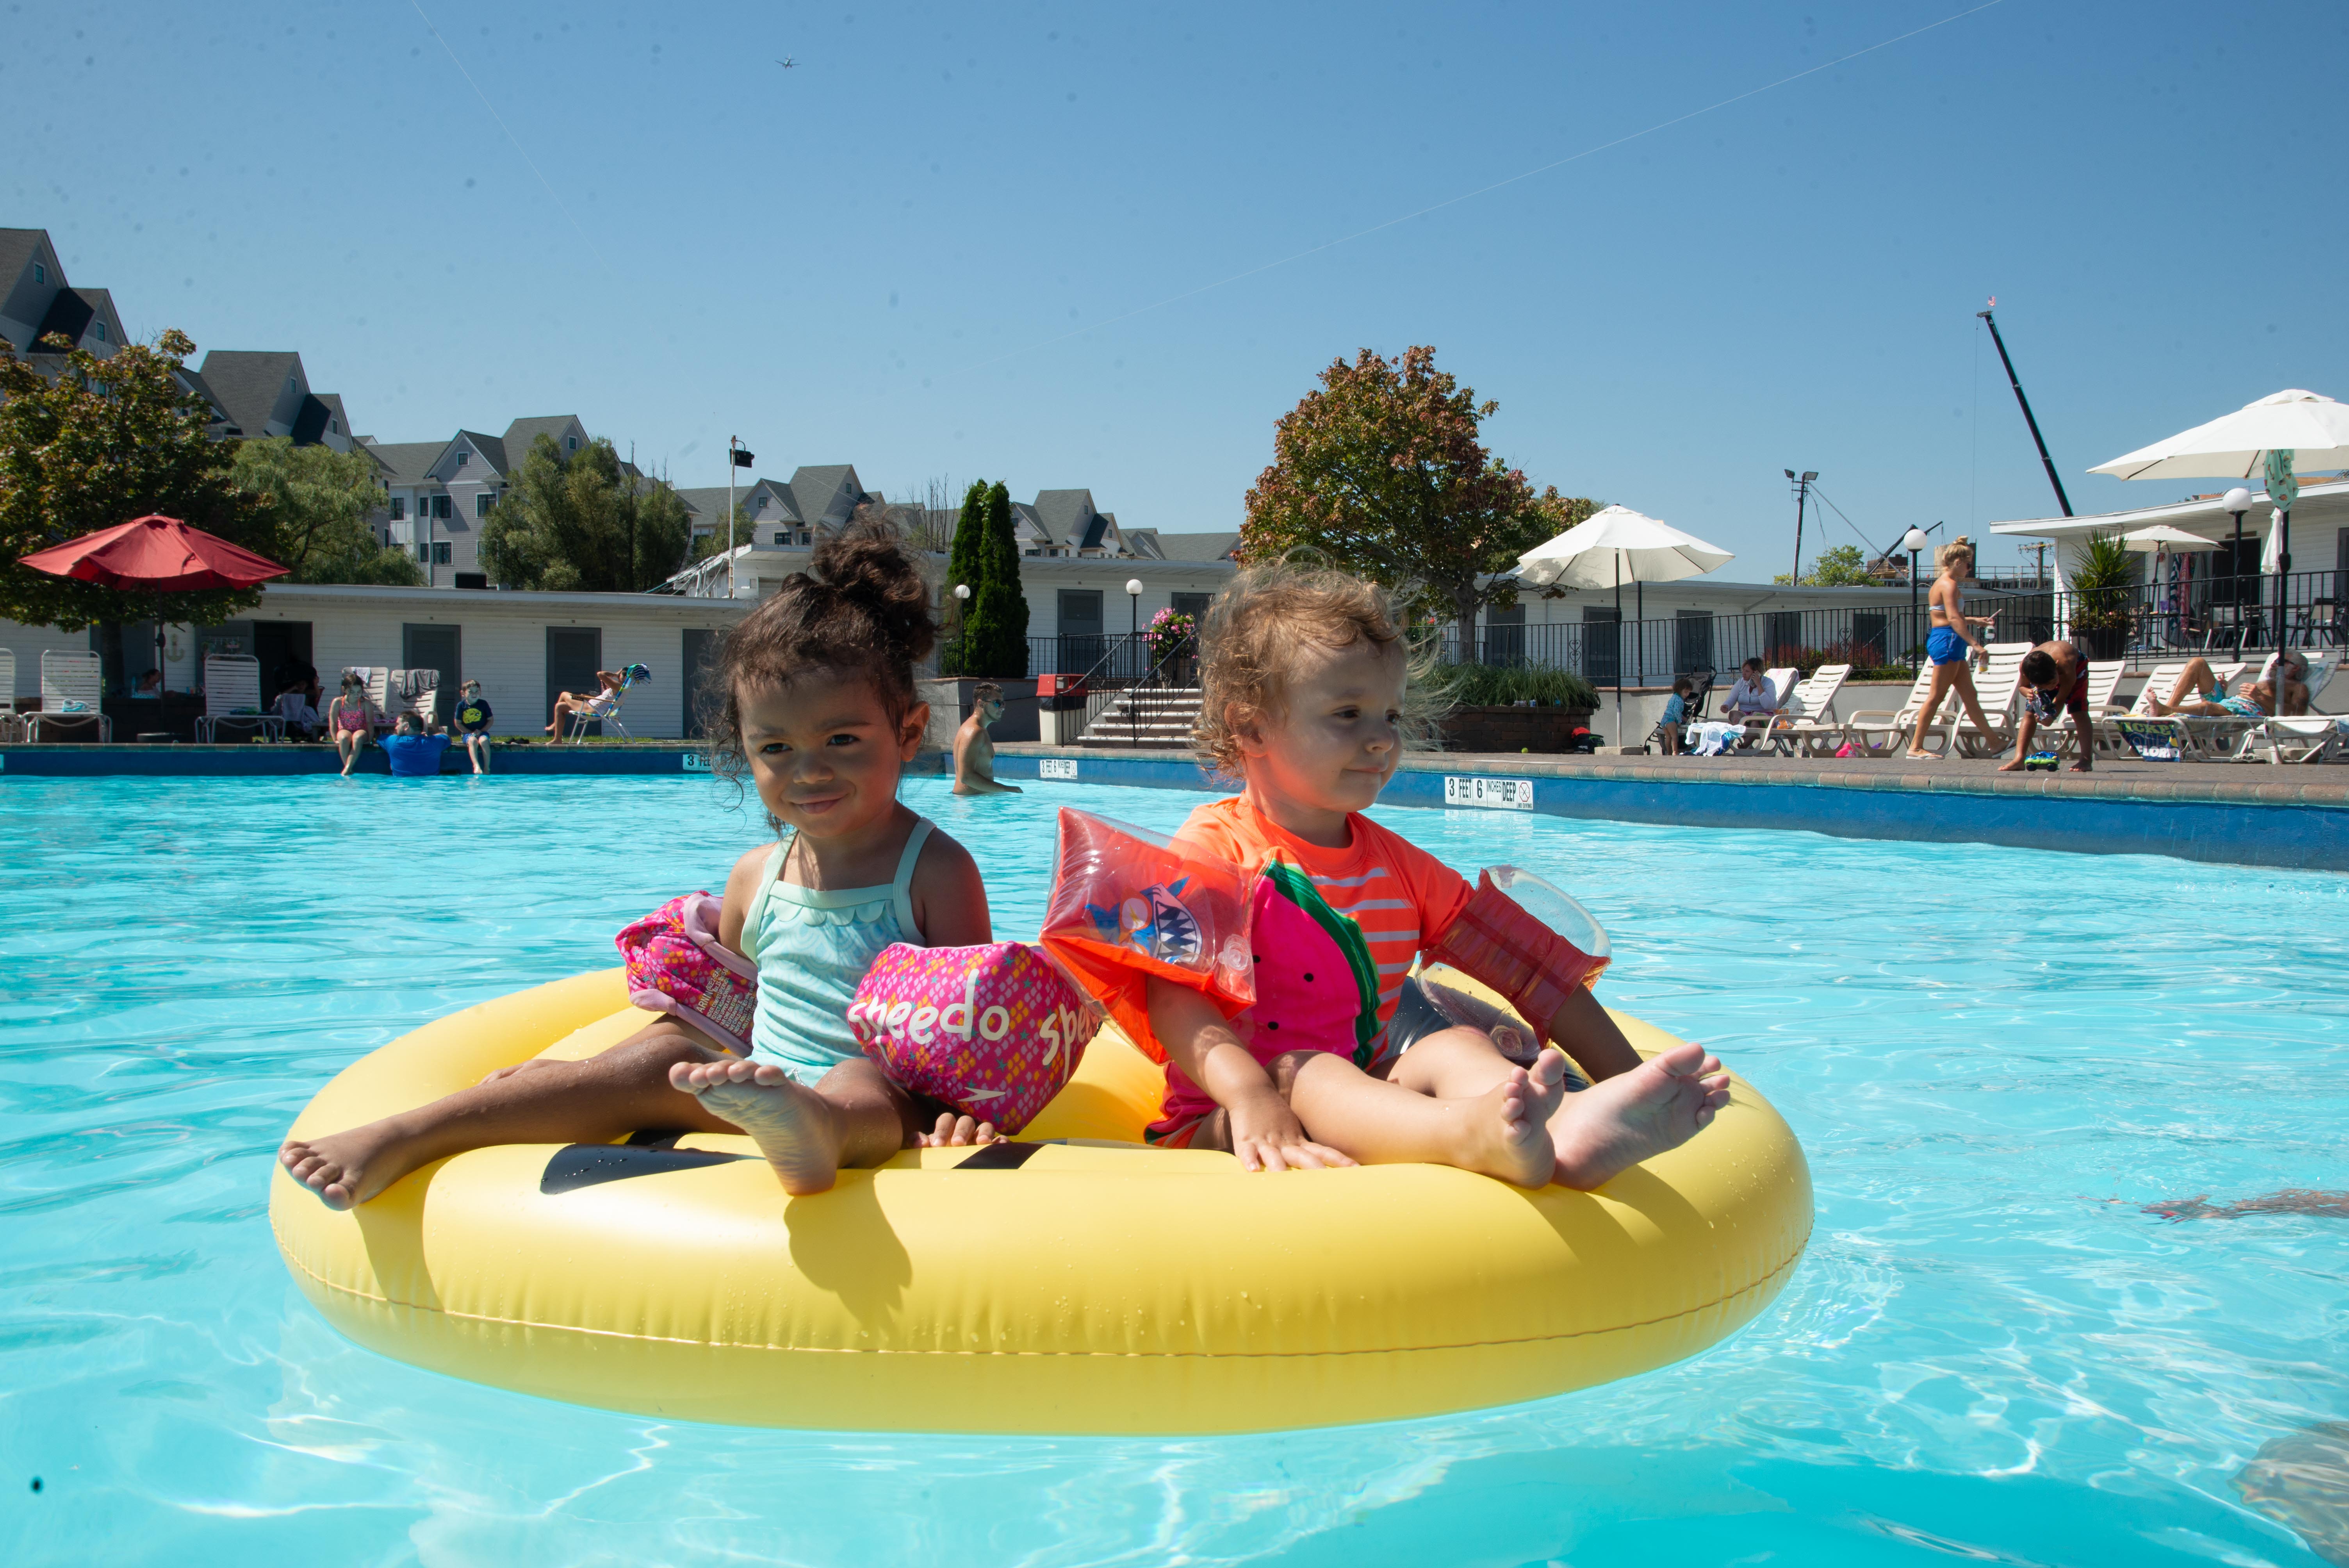 children on tube in pool